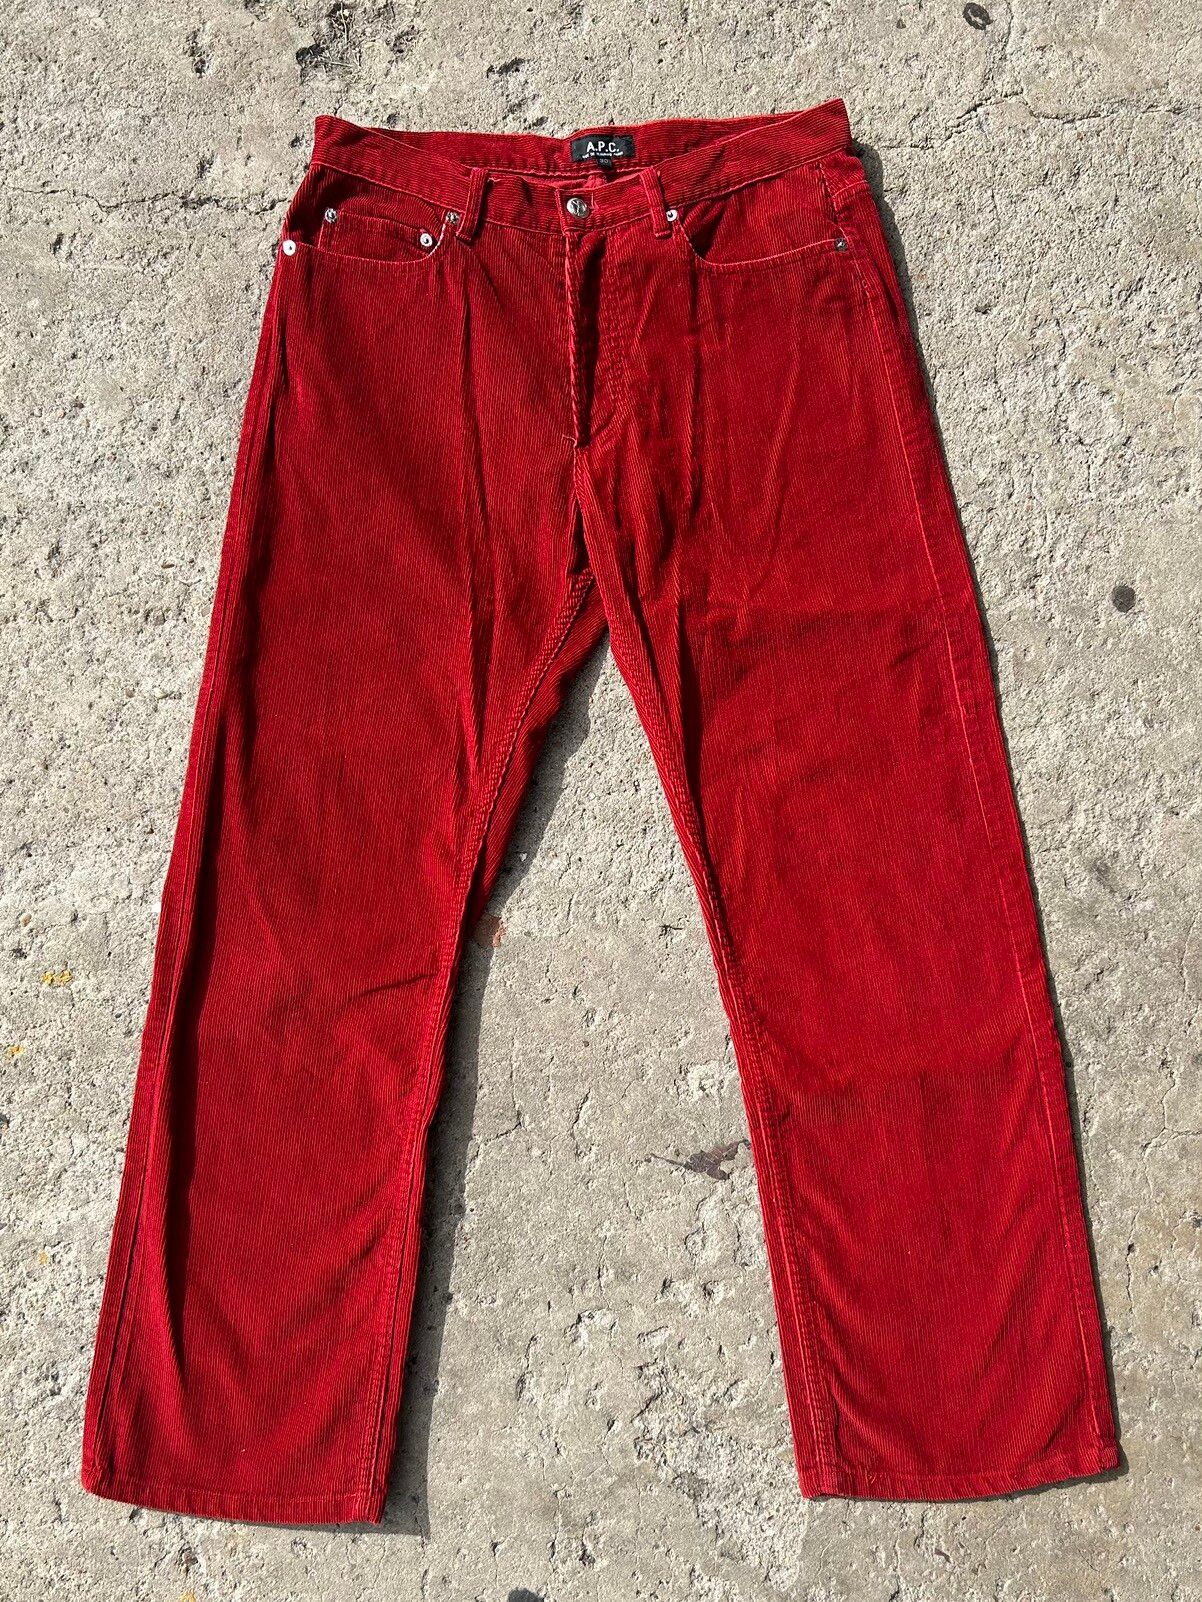 A.P.C. A.P.C 2000 RED CORDUROY pants Size US 30 / EU 46 - 1 Preview